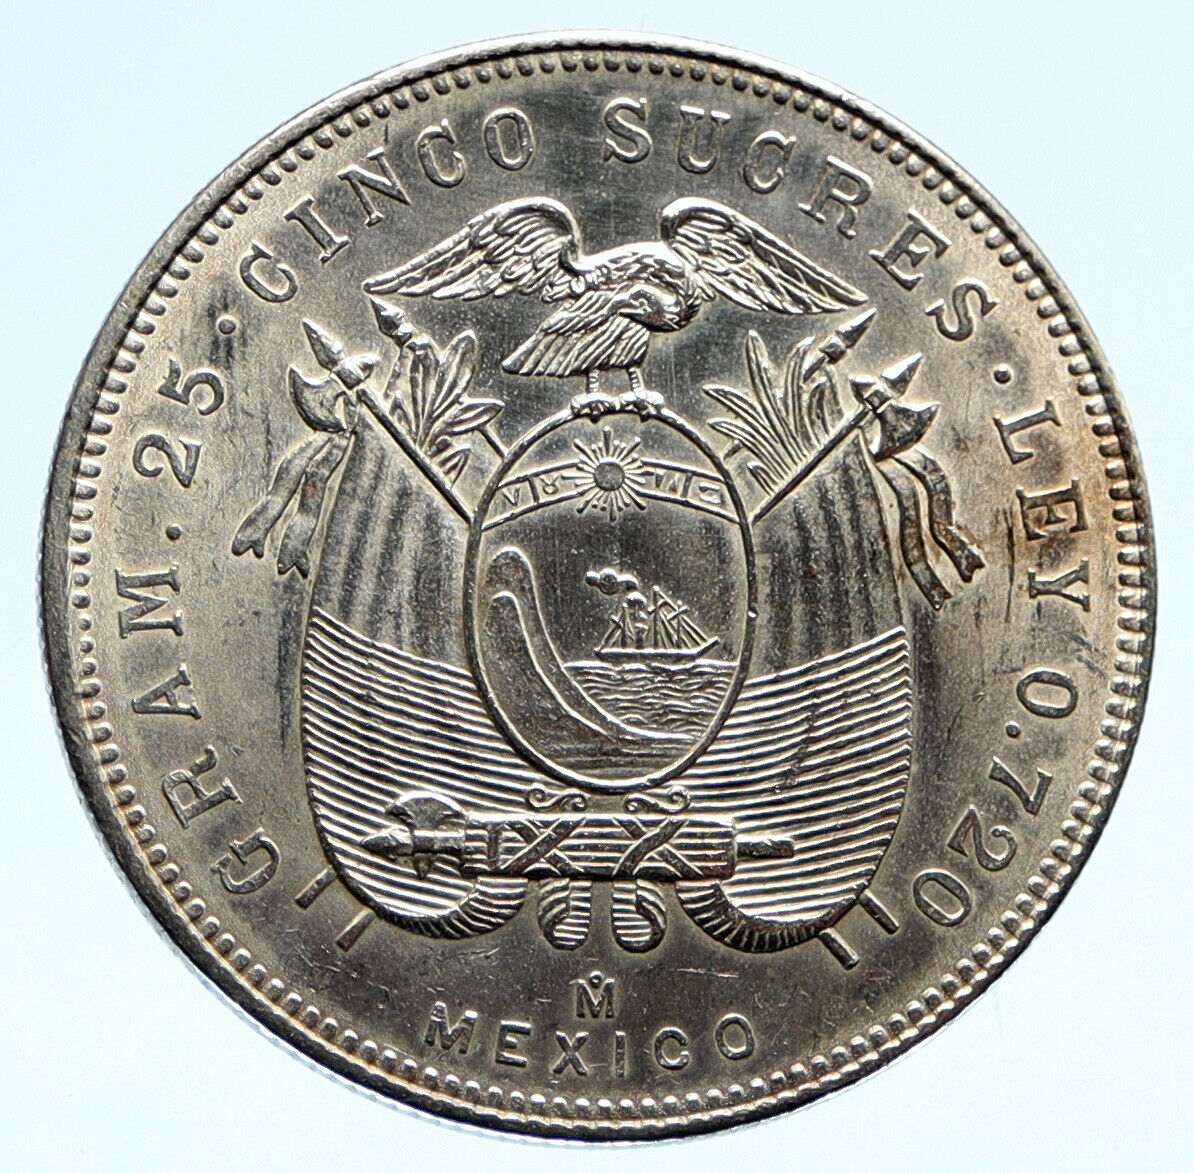 1944 ECUADOR Antonio Jose de Sucre y Alcala VINTAGE Silver 5 Sucres Coin i96083